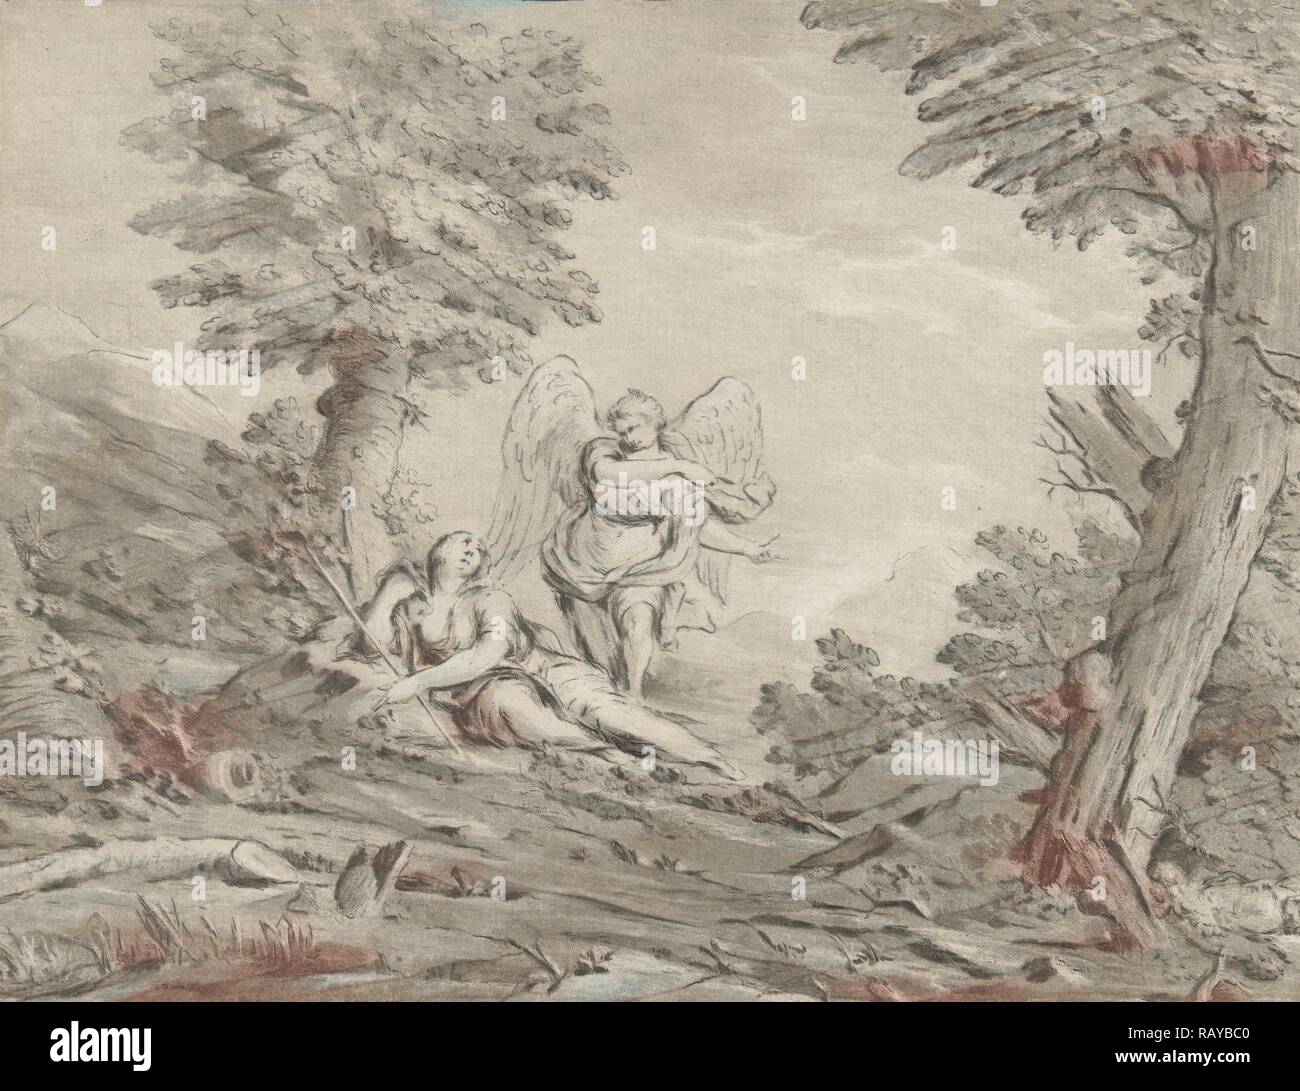 Agar nel deserto, stampa maker: Jurriaan Cootwijck, Eustache Lesueur, 1759. Reinventato da Gibon. Arte Classica con un reinventato Foto Stock